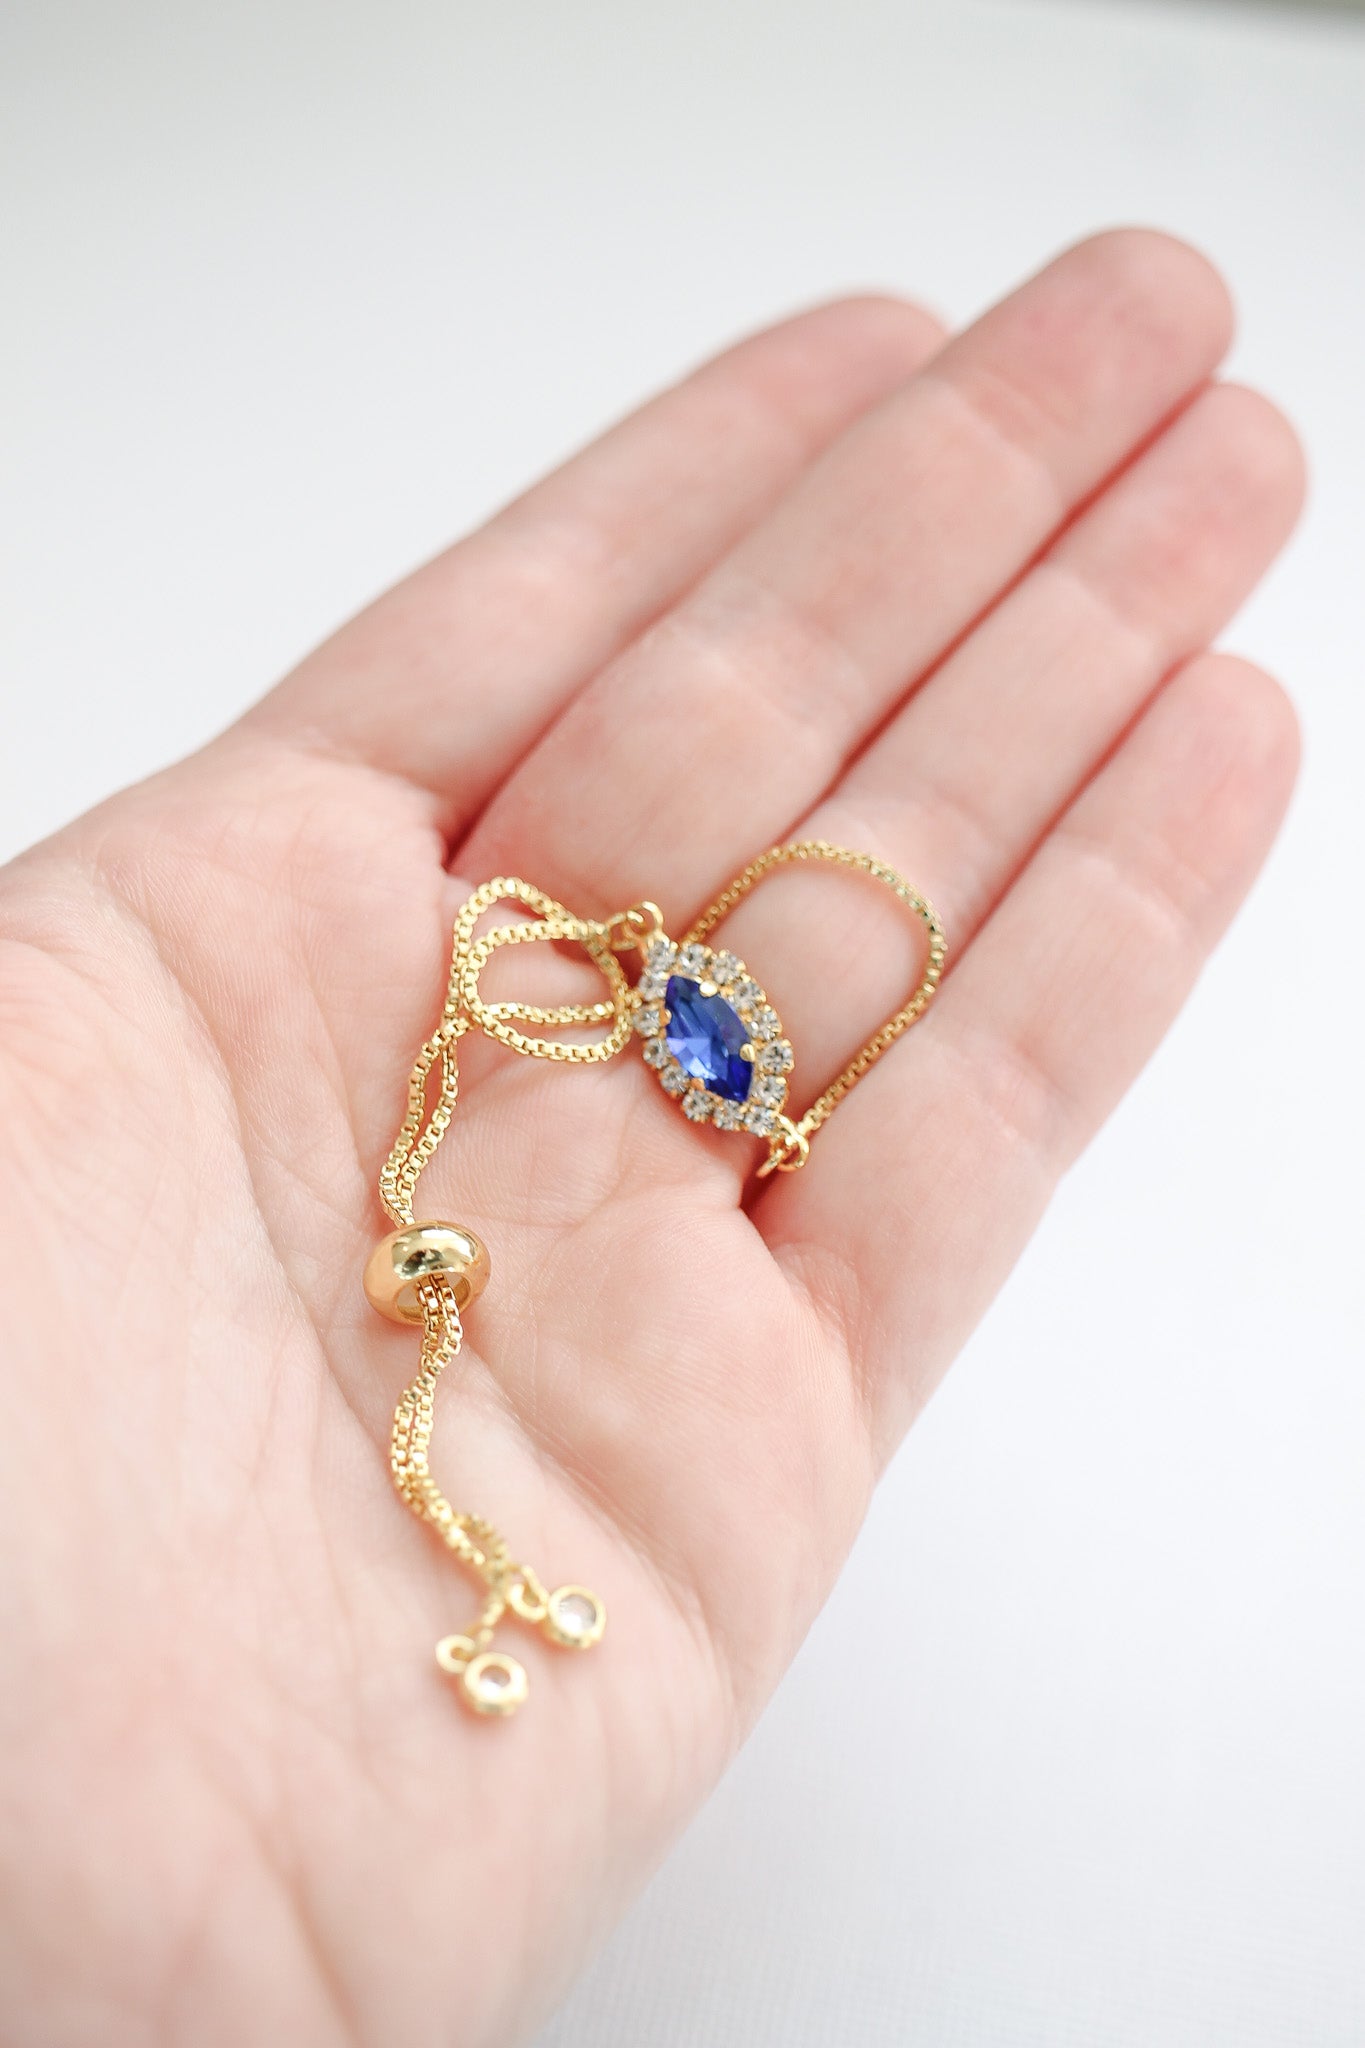 Gatsby Bracelet in Sapphire